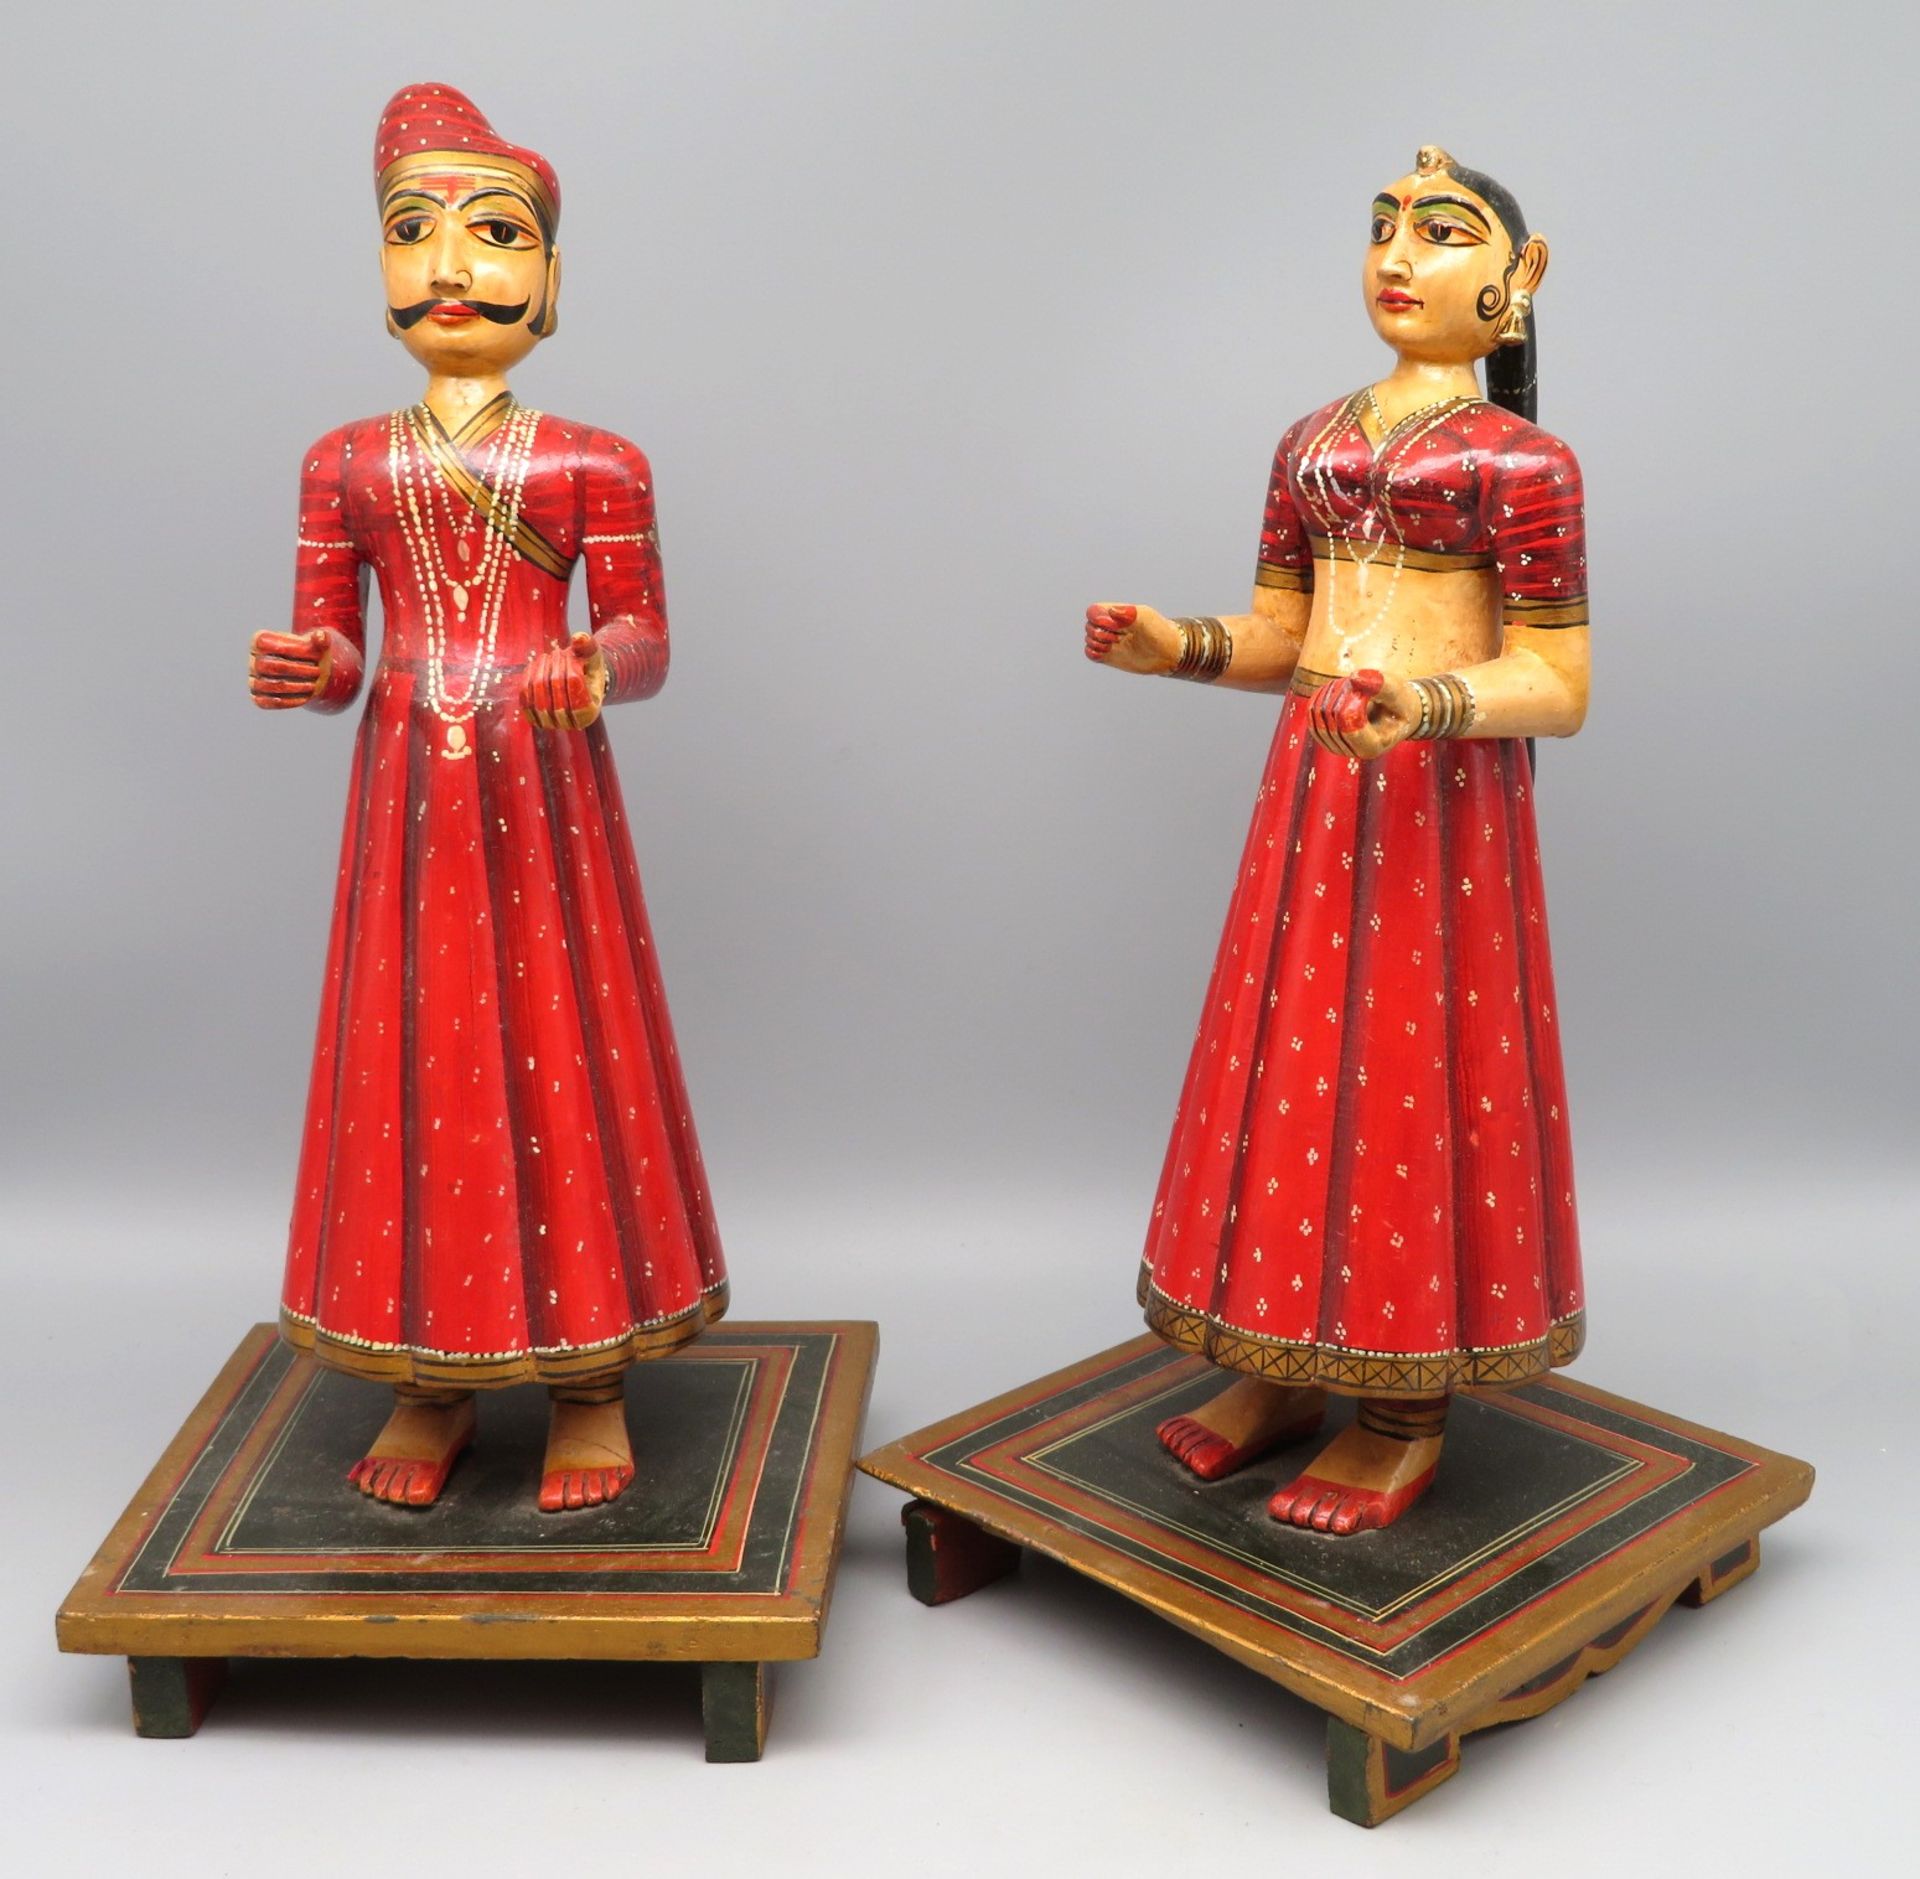 2 indische Hochzeitsfiguren, Indien, 1. Hälfte 20. Jahrhundert, Holz geschnitzt, farbig bemalt, qua - Bild 2 aus 2